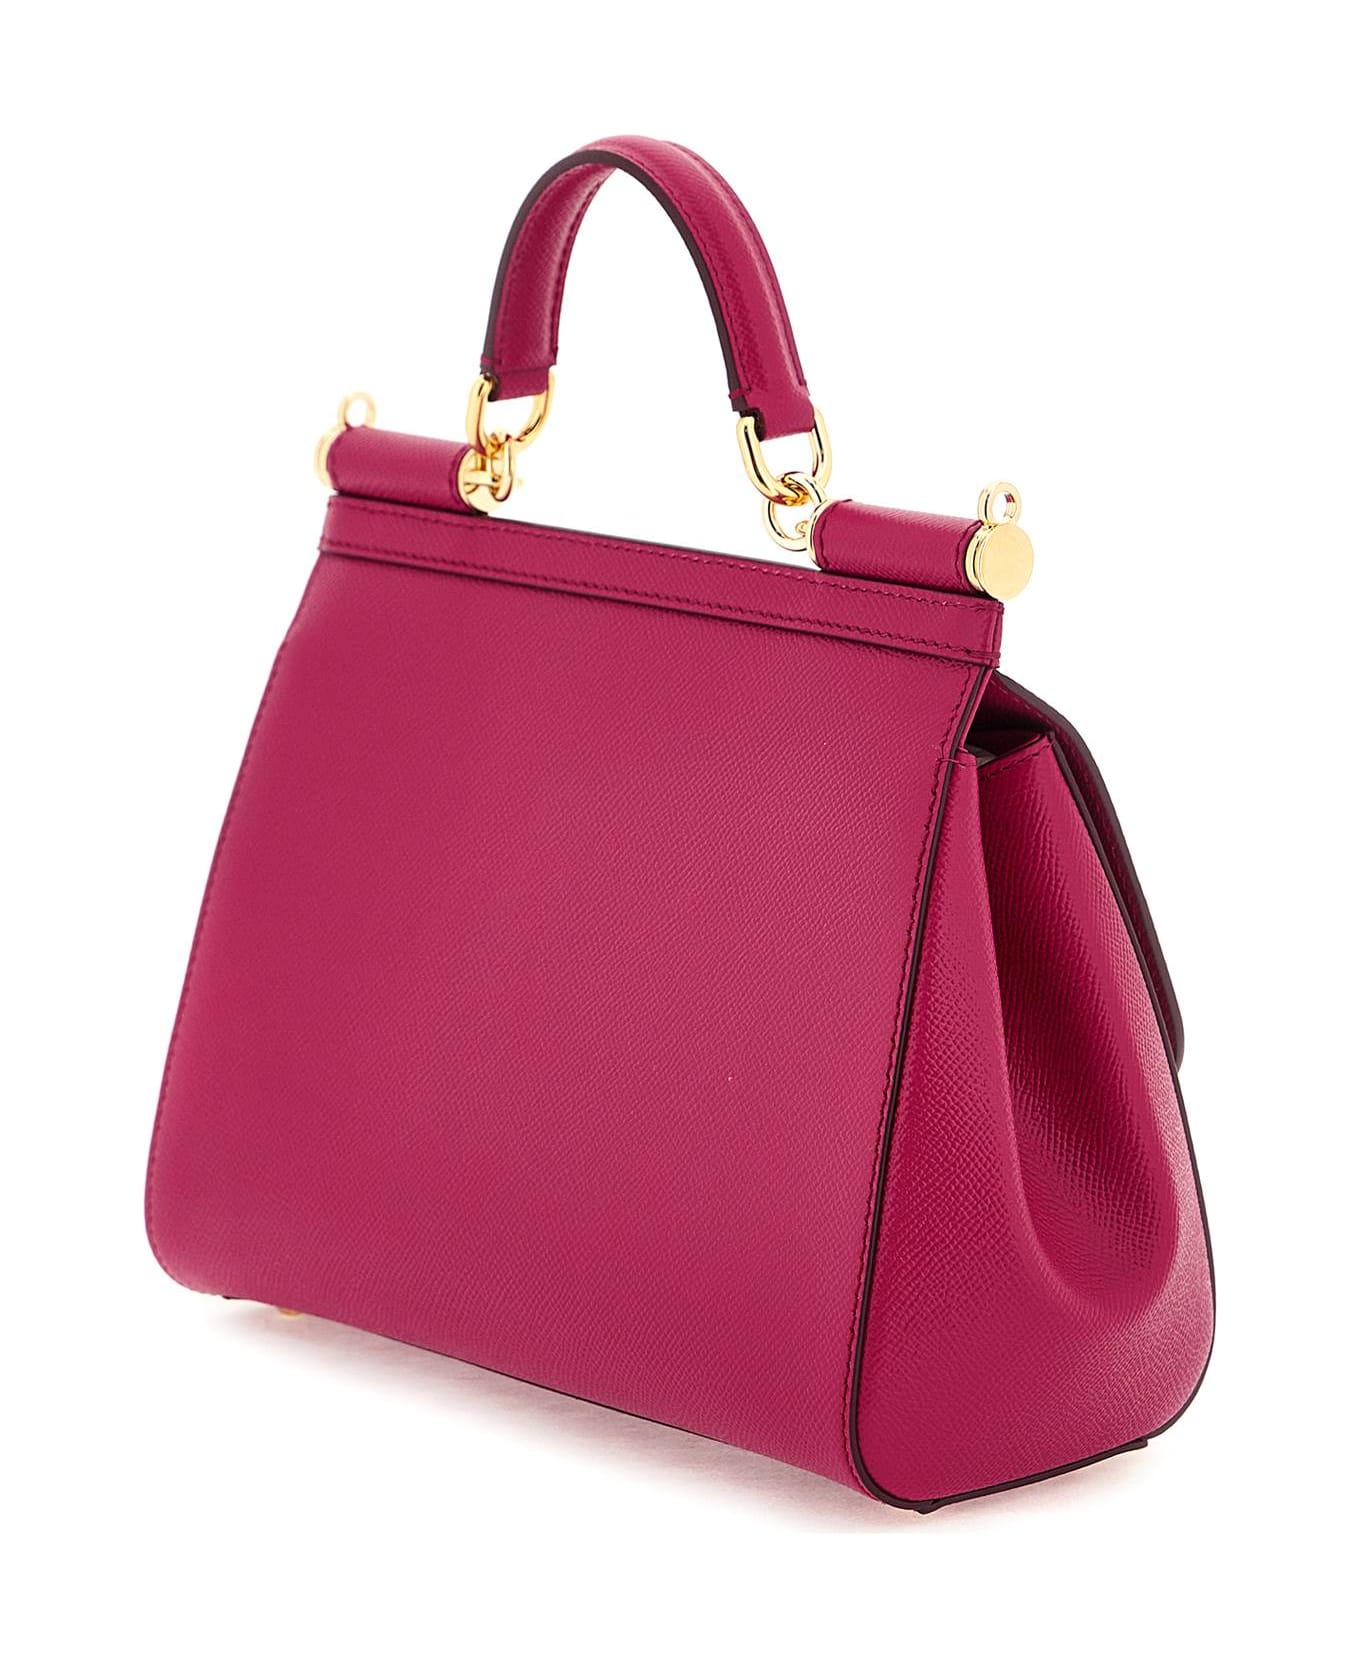 Dolce & Gabbana Sicily Handbag - Fuchsia トートバッグ